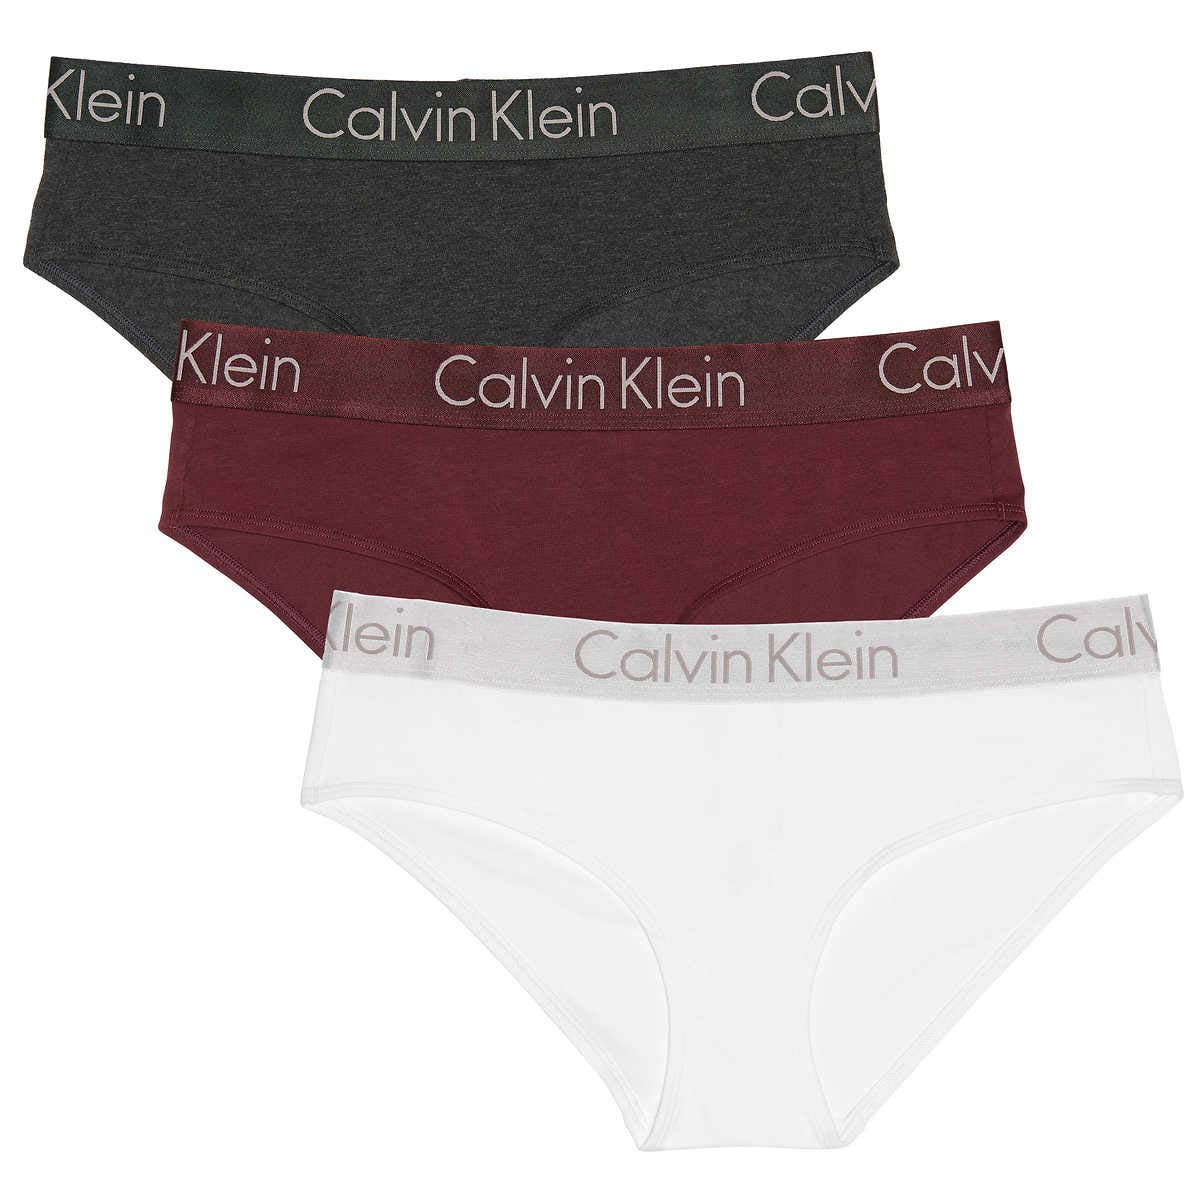 Calvin klein womens underwear clearance